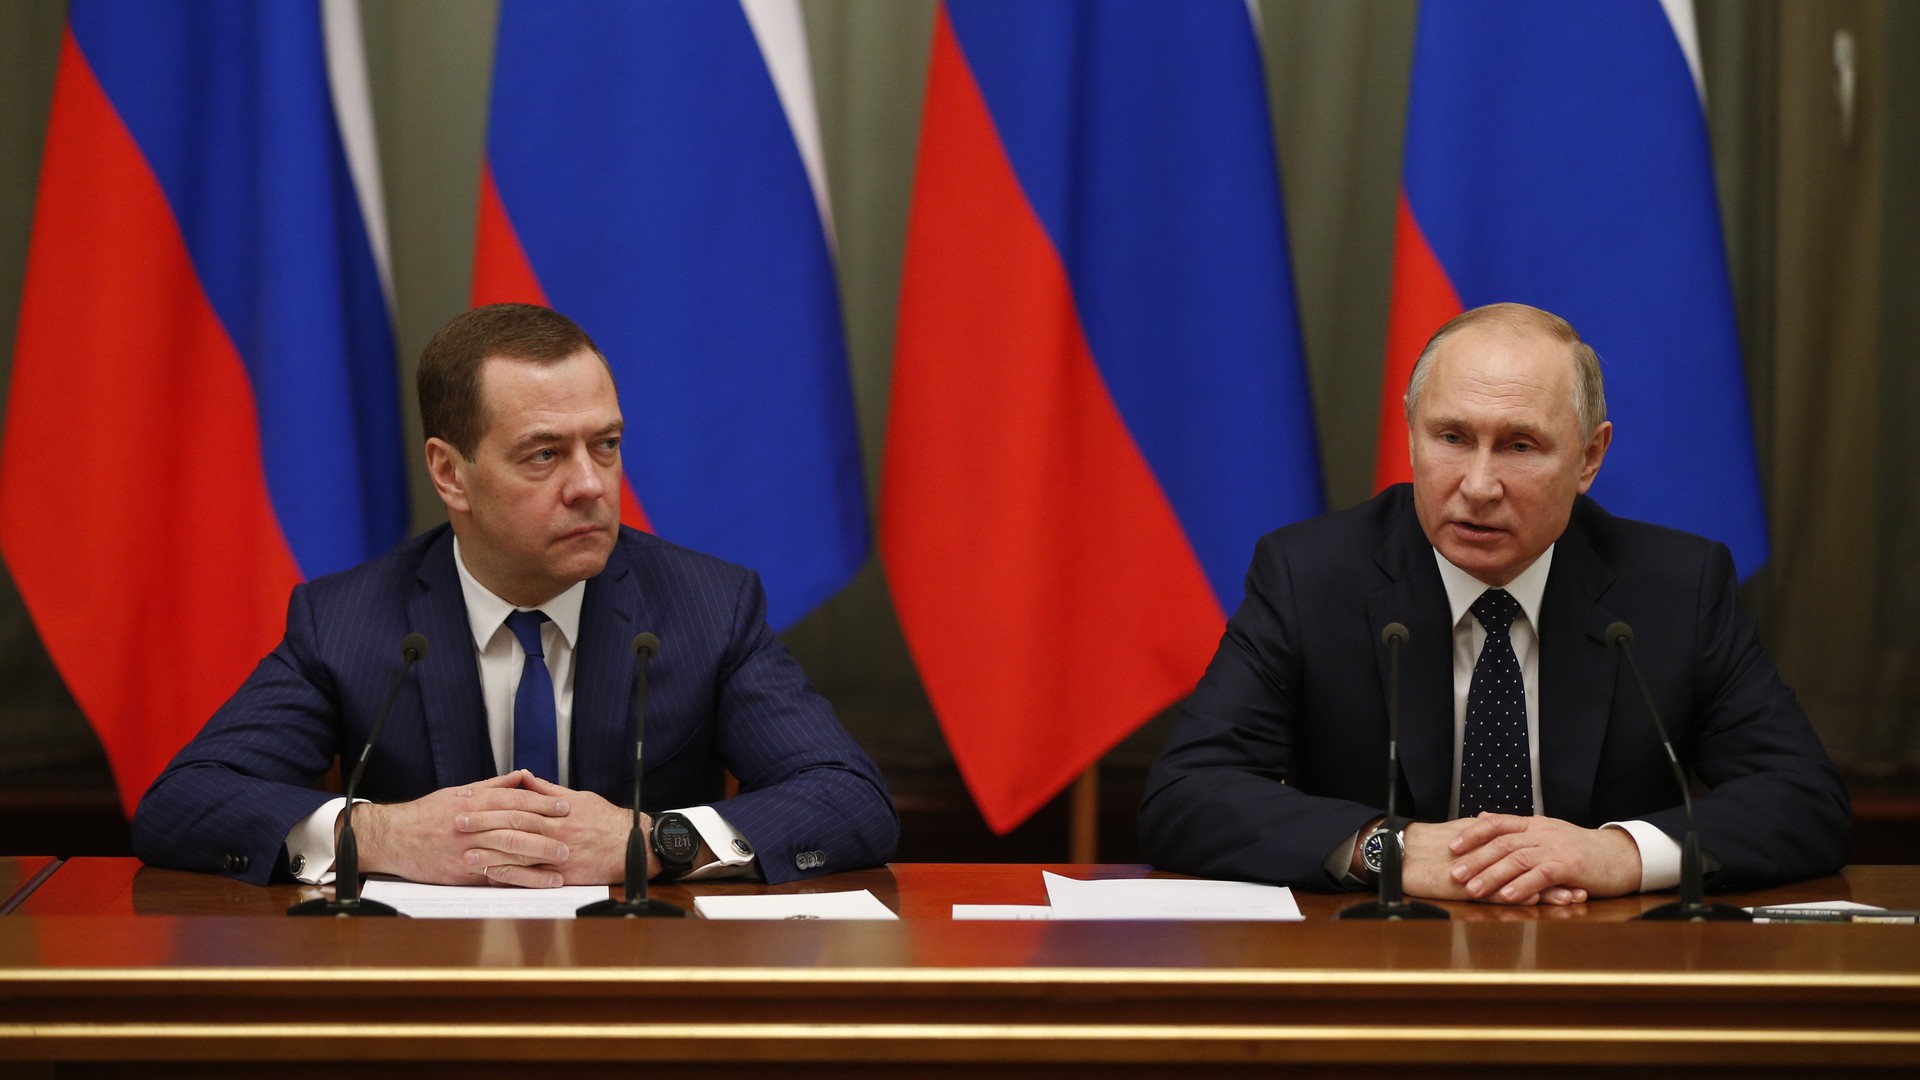 Dailystorm - Иркутский обком КПРФ потребовал отставки Путина и Медведева